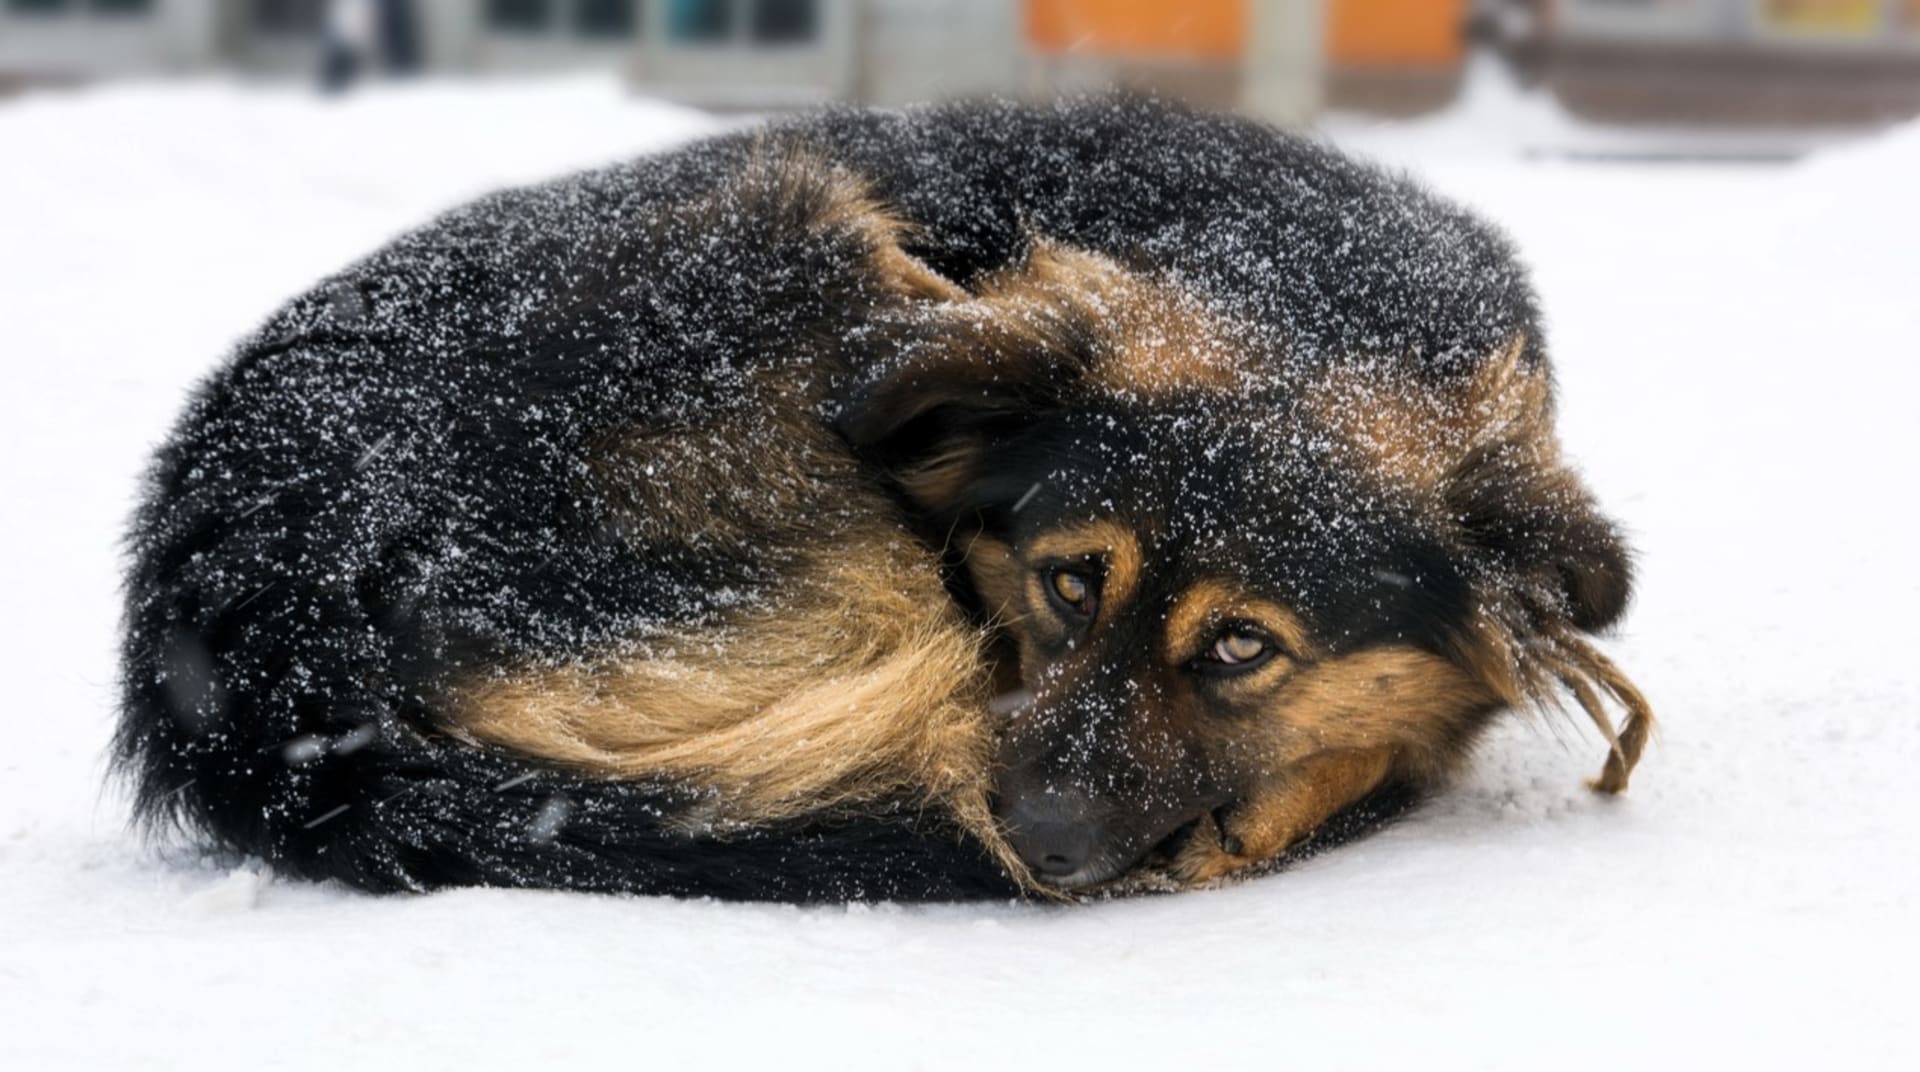  Co všechno psům v zimních mrazivých dnech hrozí a co pro ně můžete udělat